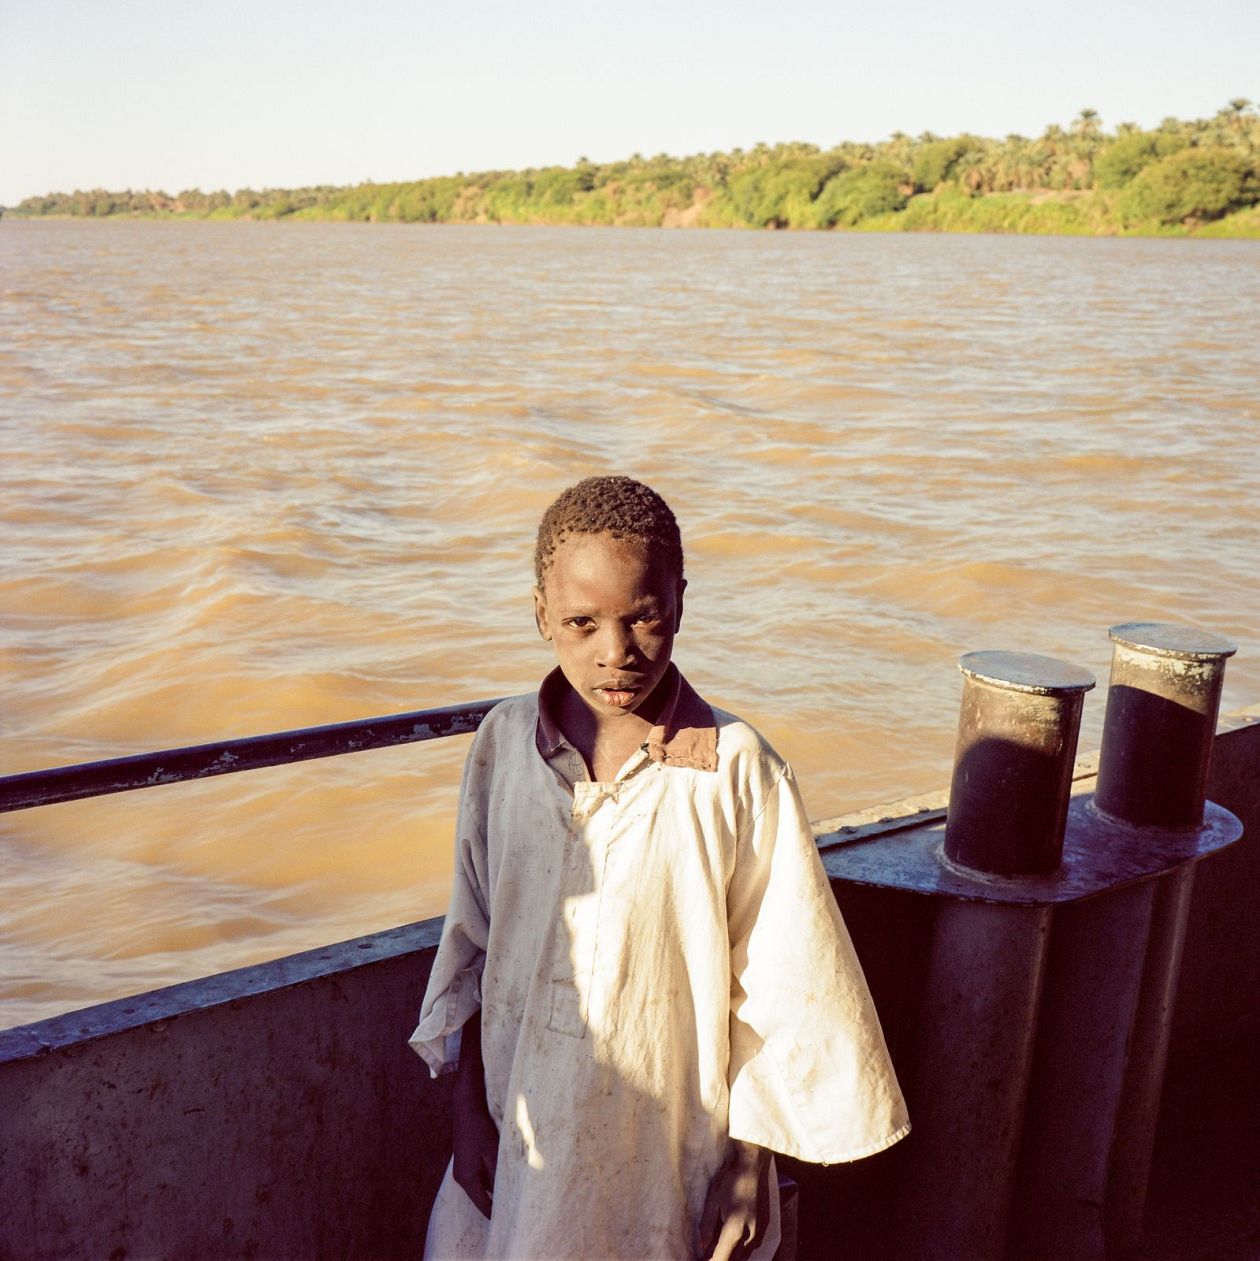 little boy on the boat. Nubia, Sudan